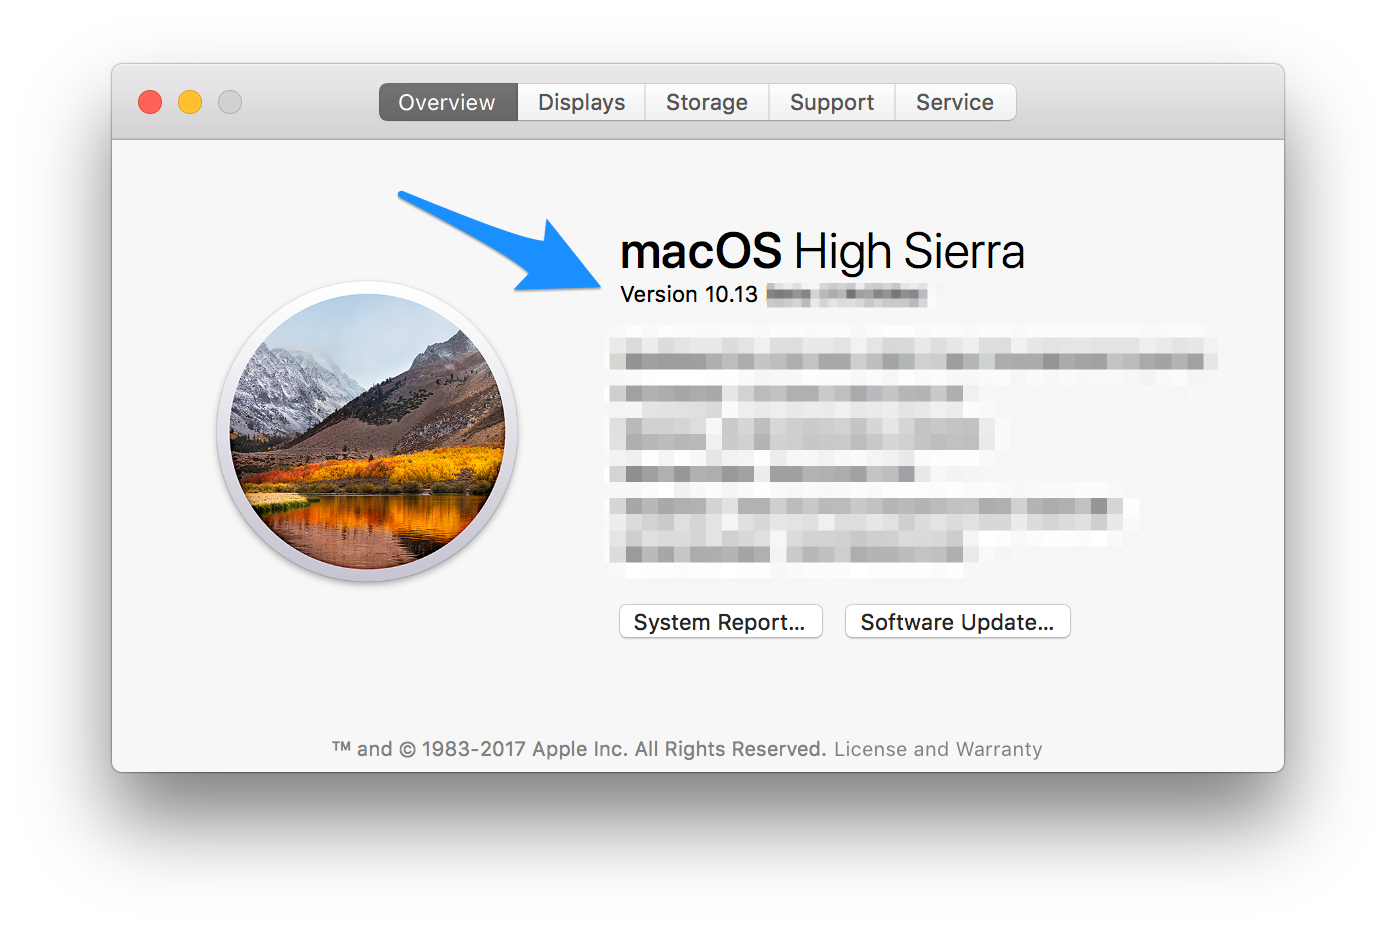 Download Macos Sierra 10.12 6 Update